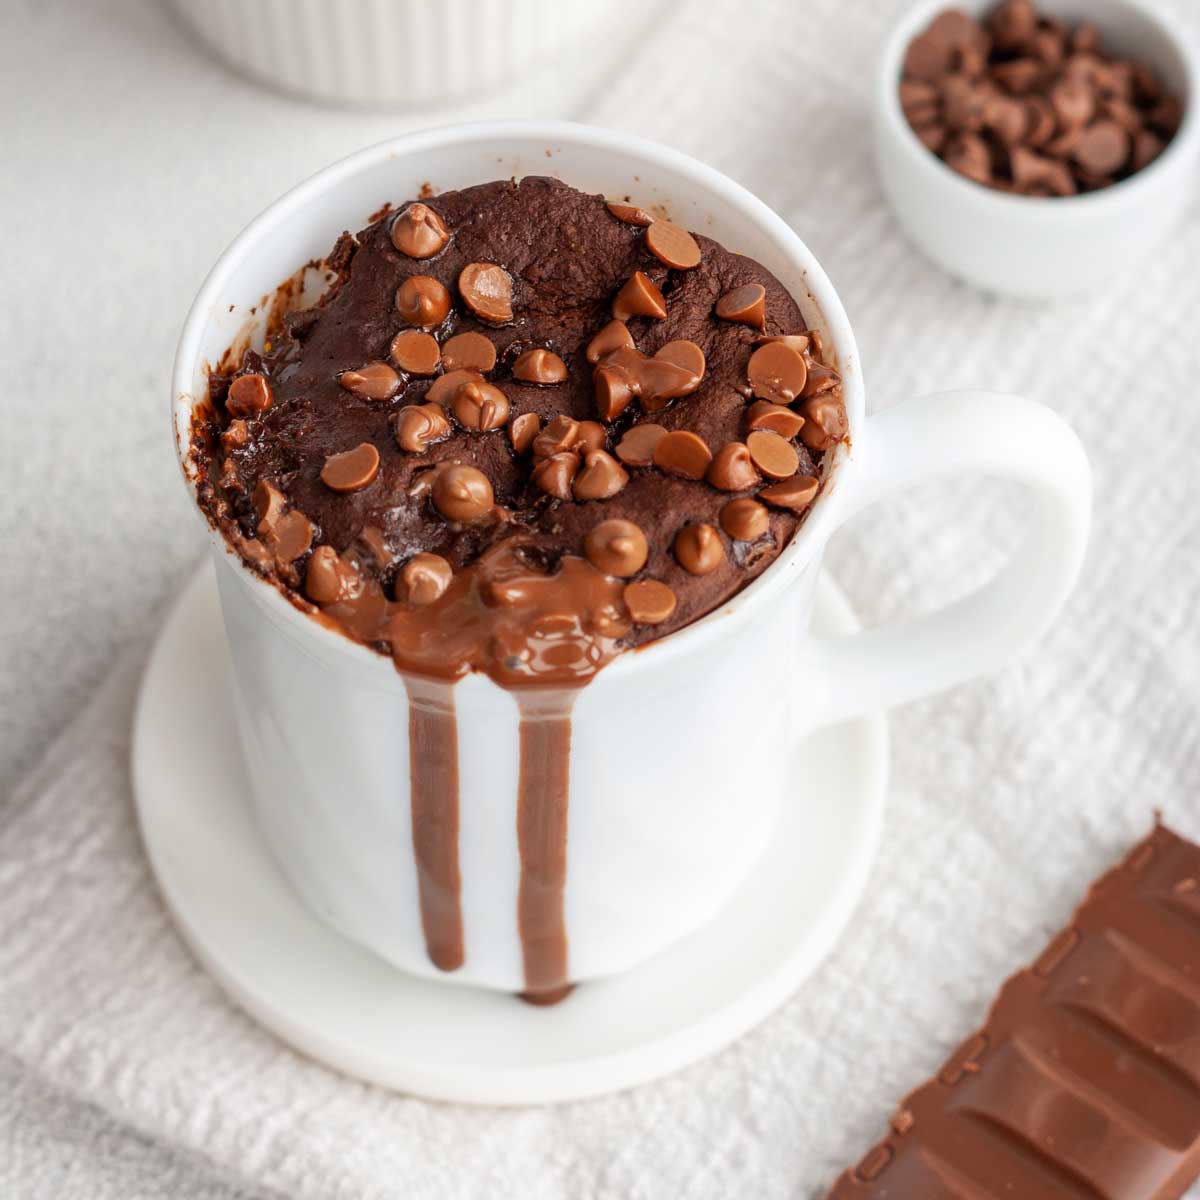 Brownie en microondas a la taza (receta rápida en 5 minutos) - PequeRecetas